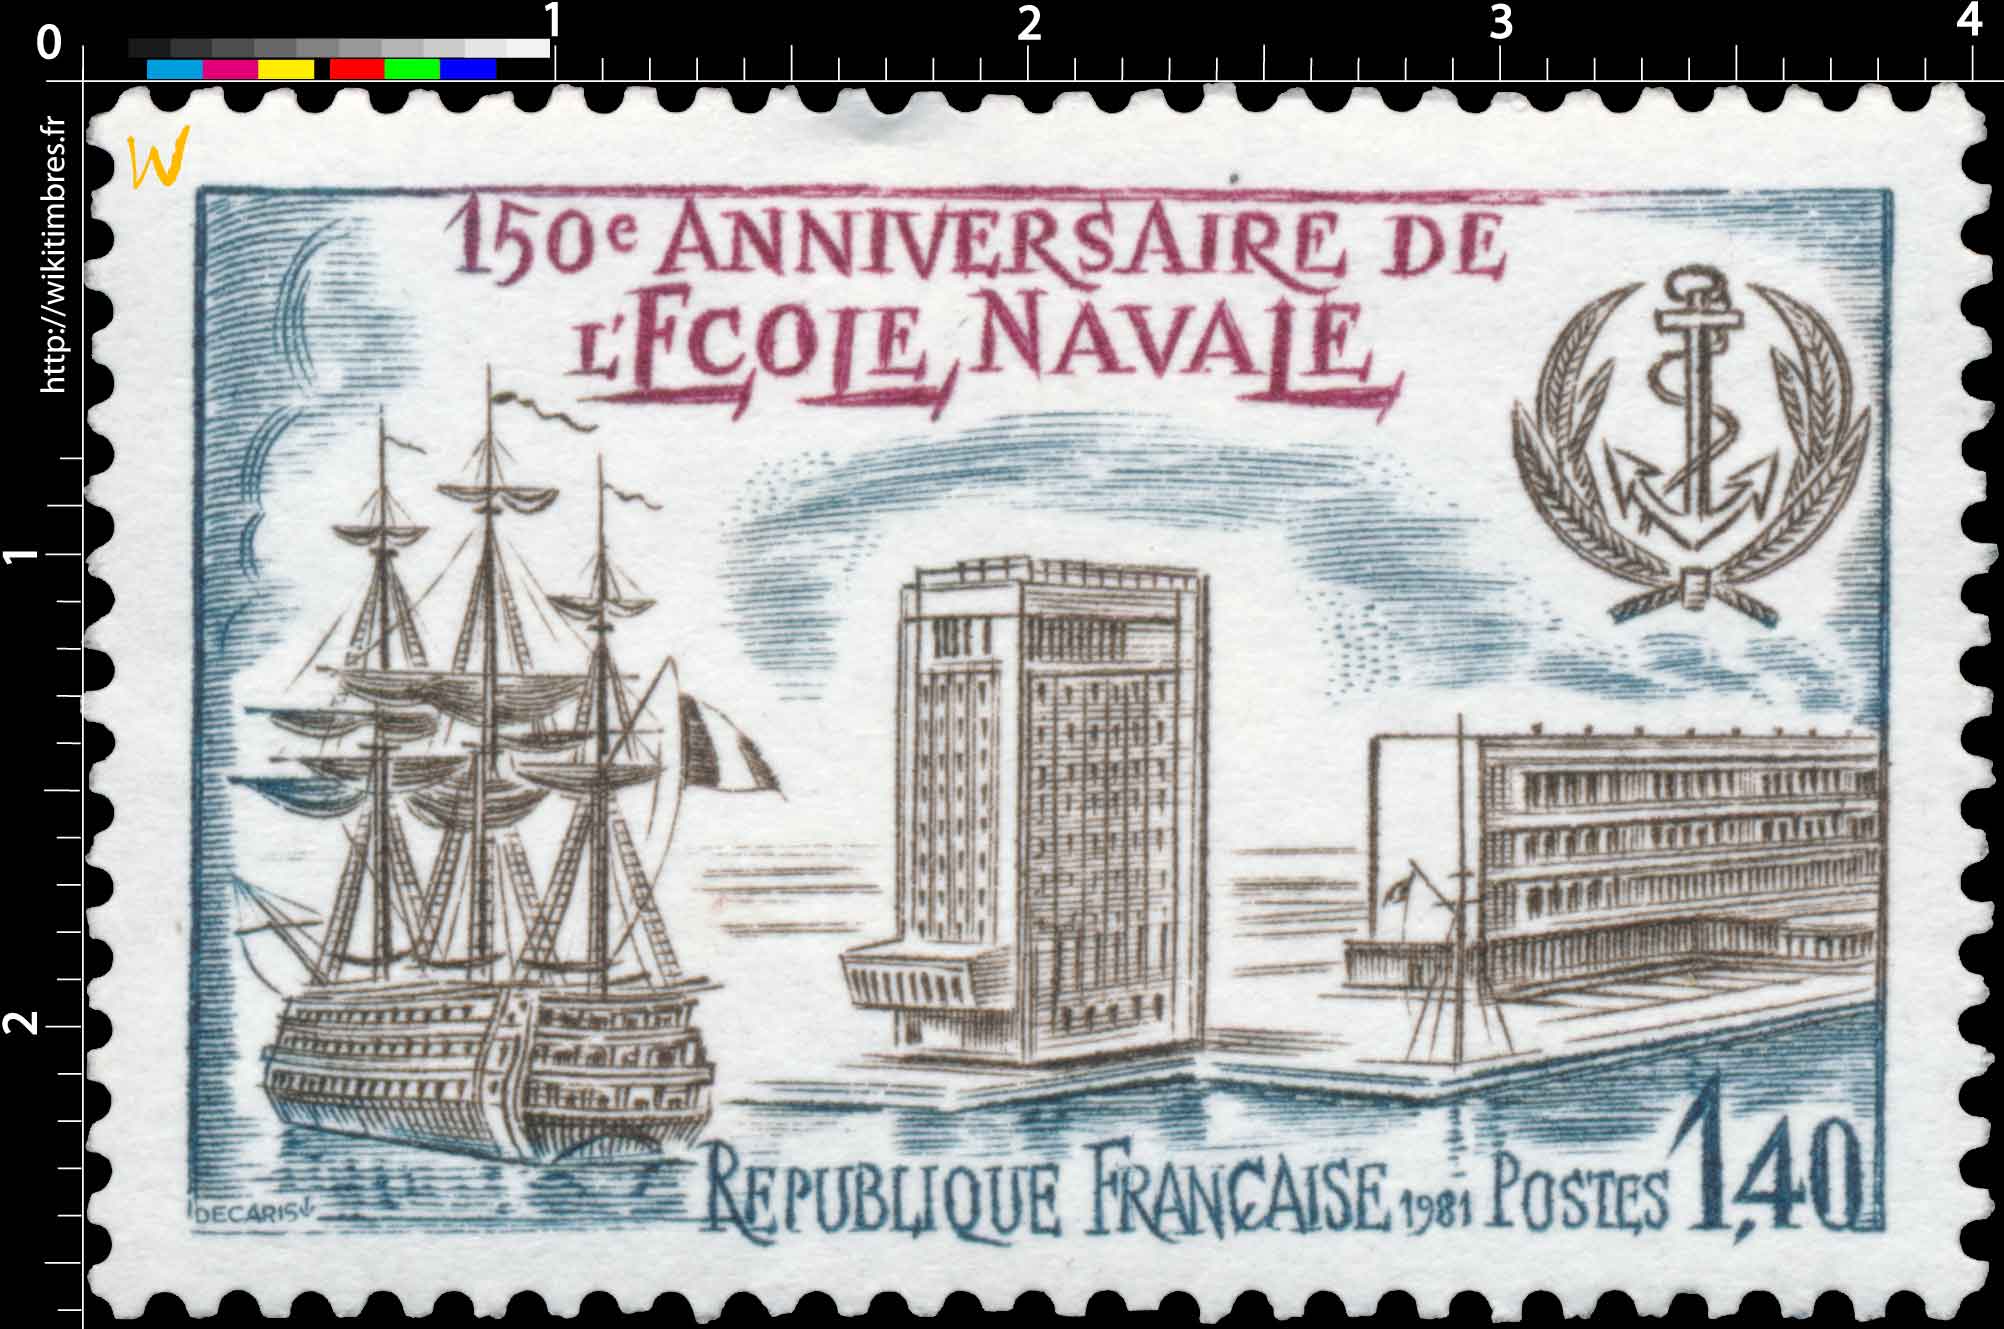 1981 150e ANNIVERSAIRE DE L'ÉCOLE NAVALE